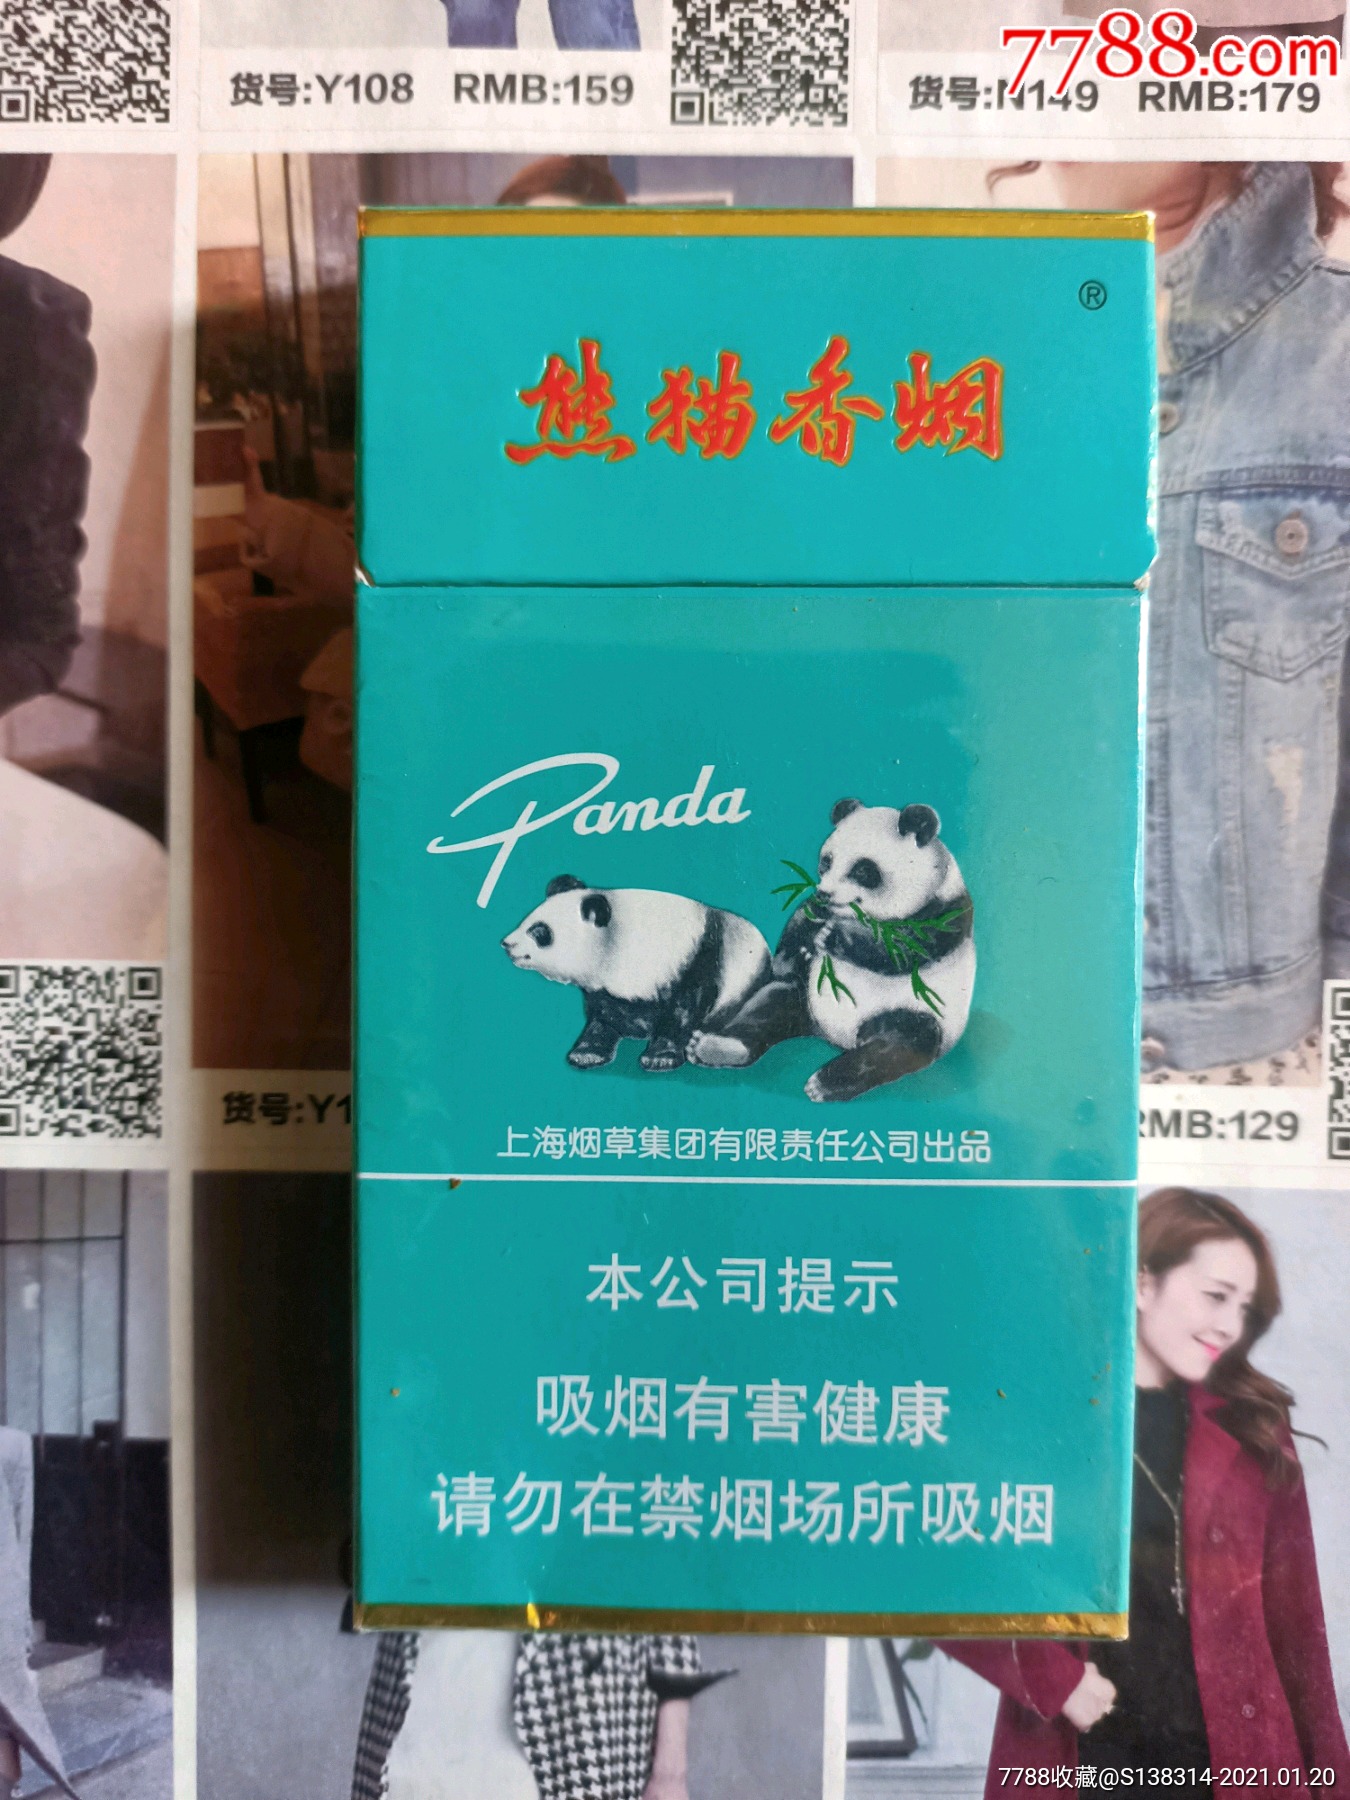 熊猫香烟100元一包图片